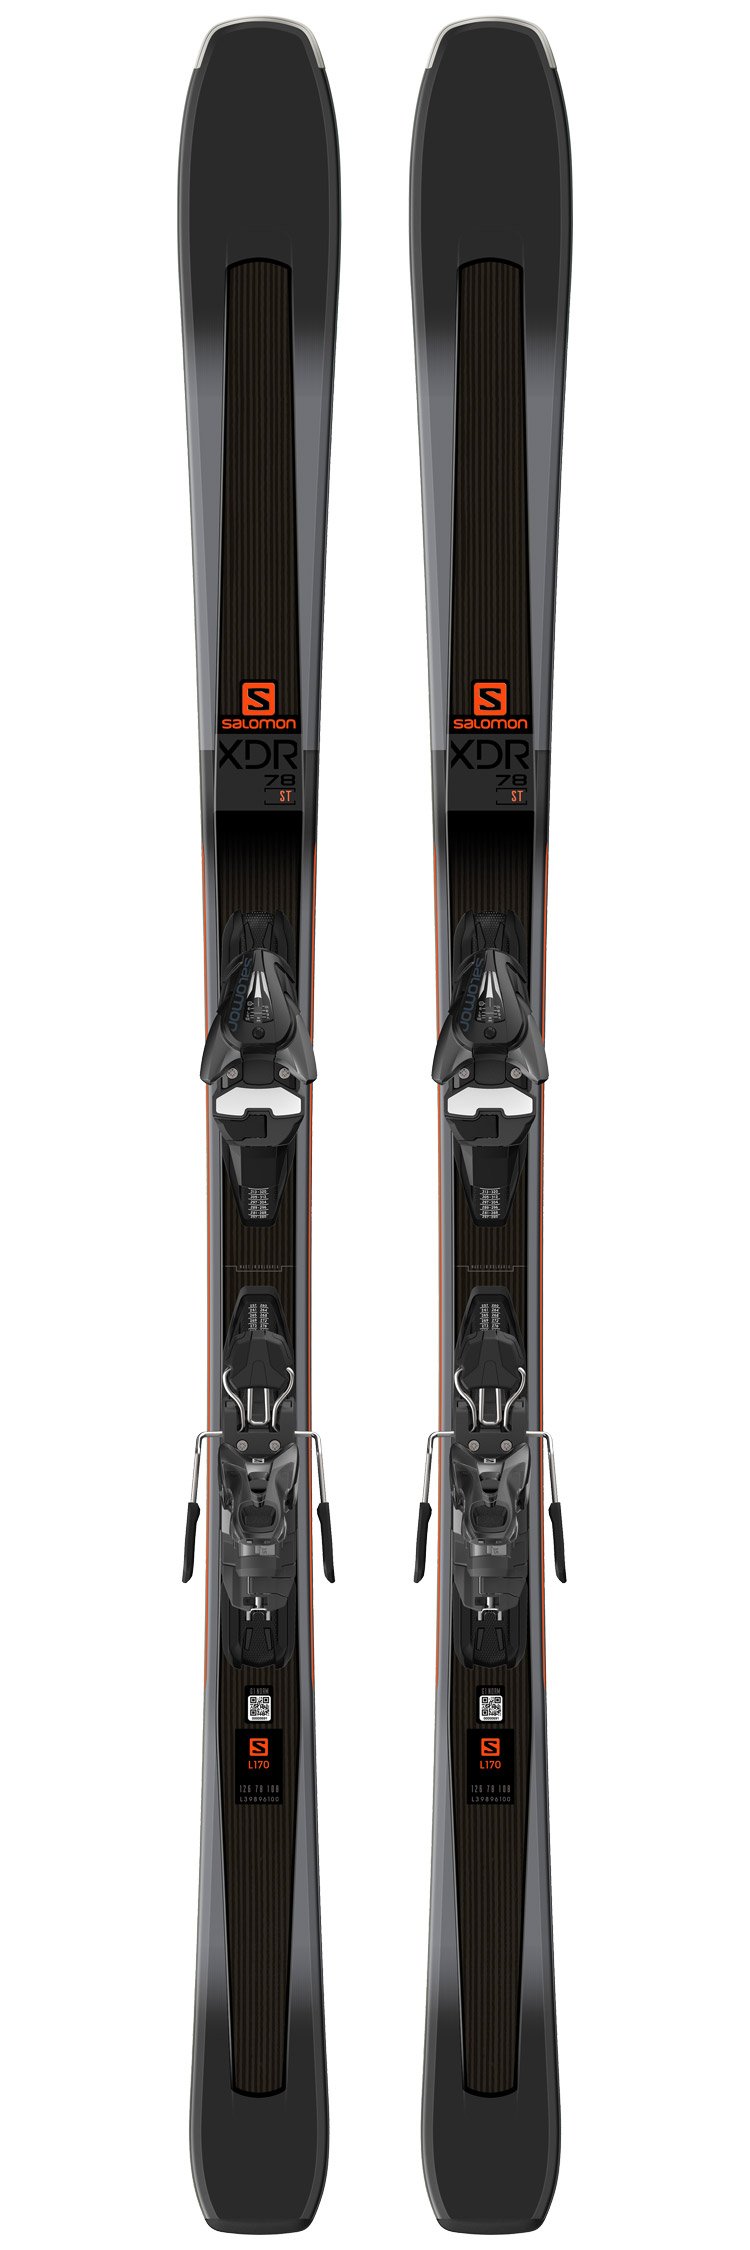 Vær sød at lade være Kommunikationsnetværk Skærm Salomon Alpine ski set XDR 78 ST + bindings - Winter 2019 | Glisshop